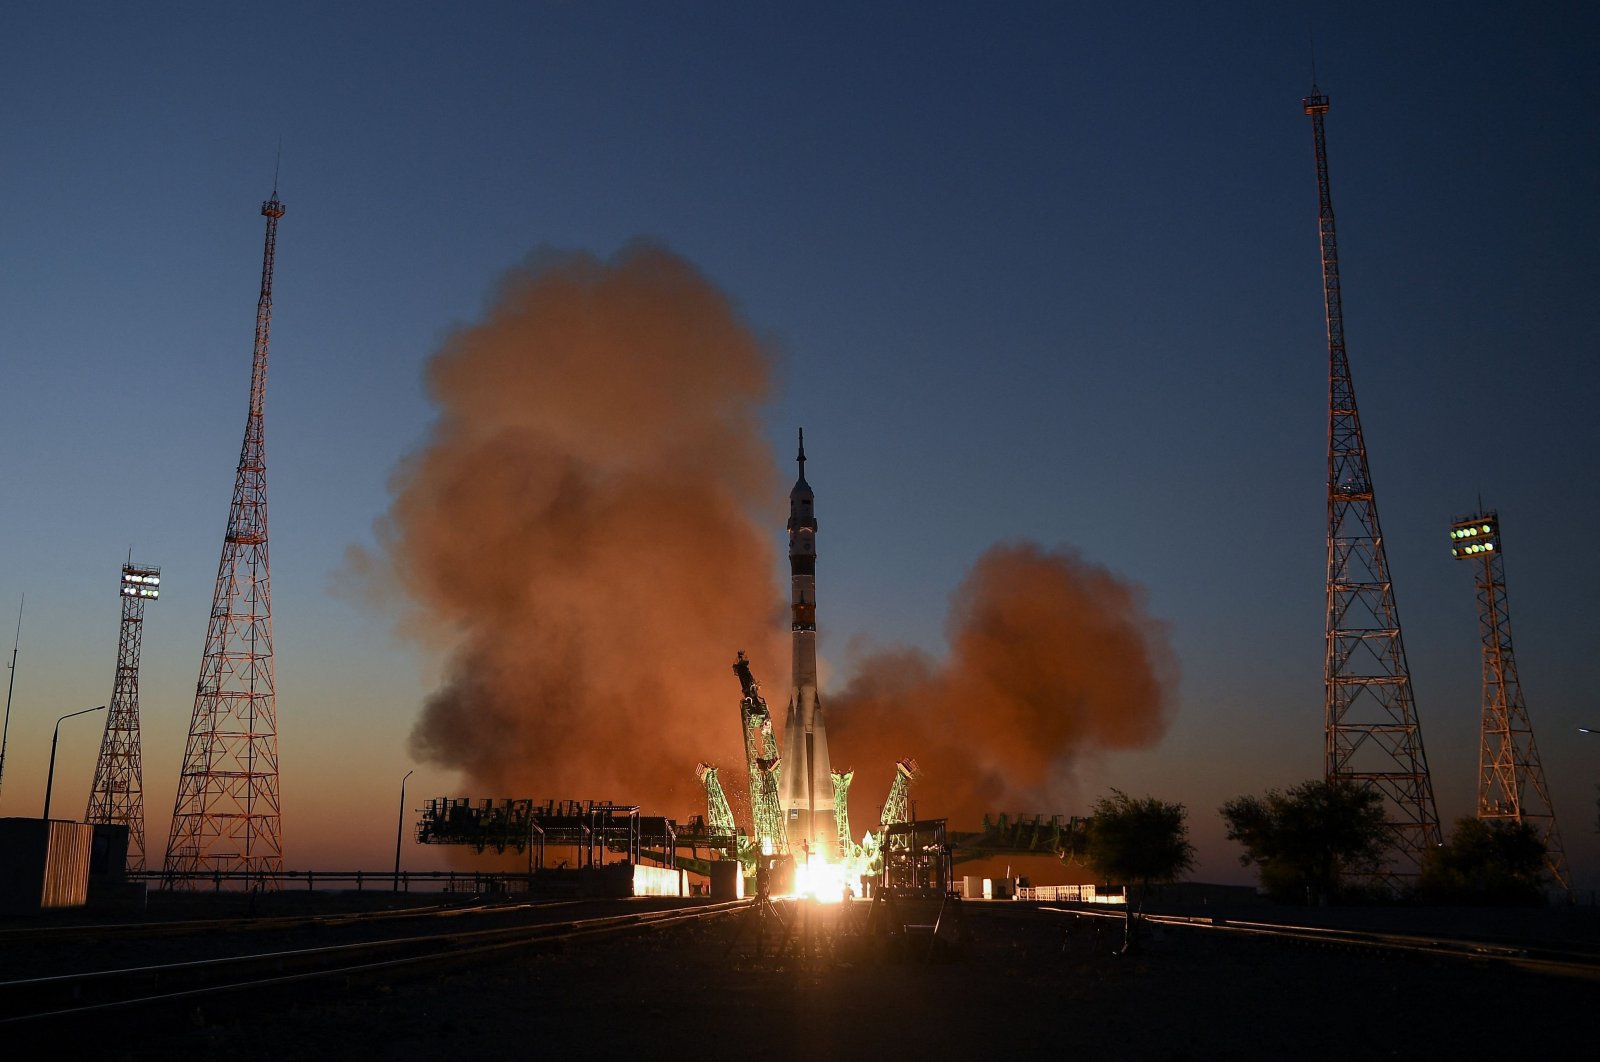 Rusia akan mengirim pesawat ruang angkasa penyelamat untuk membawa pulang awak ISS setelah bocor